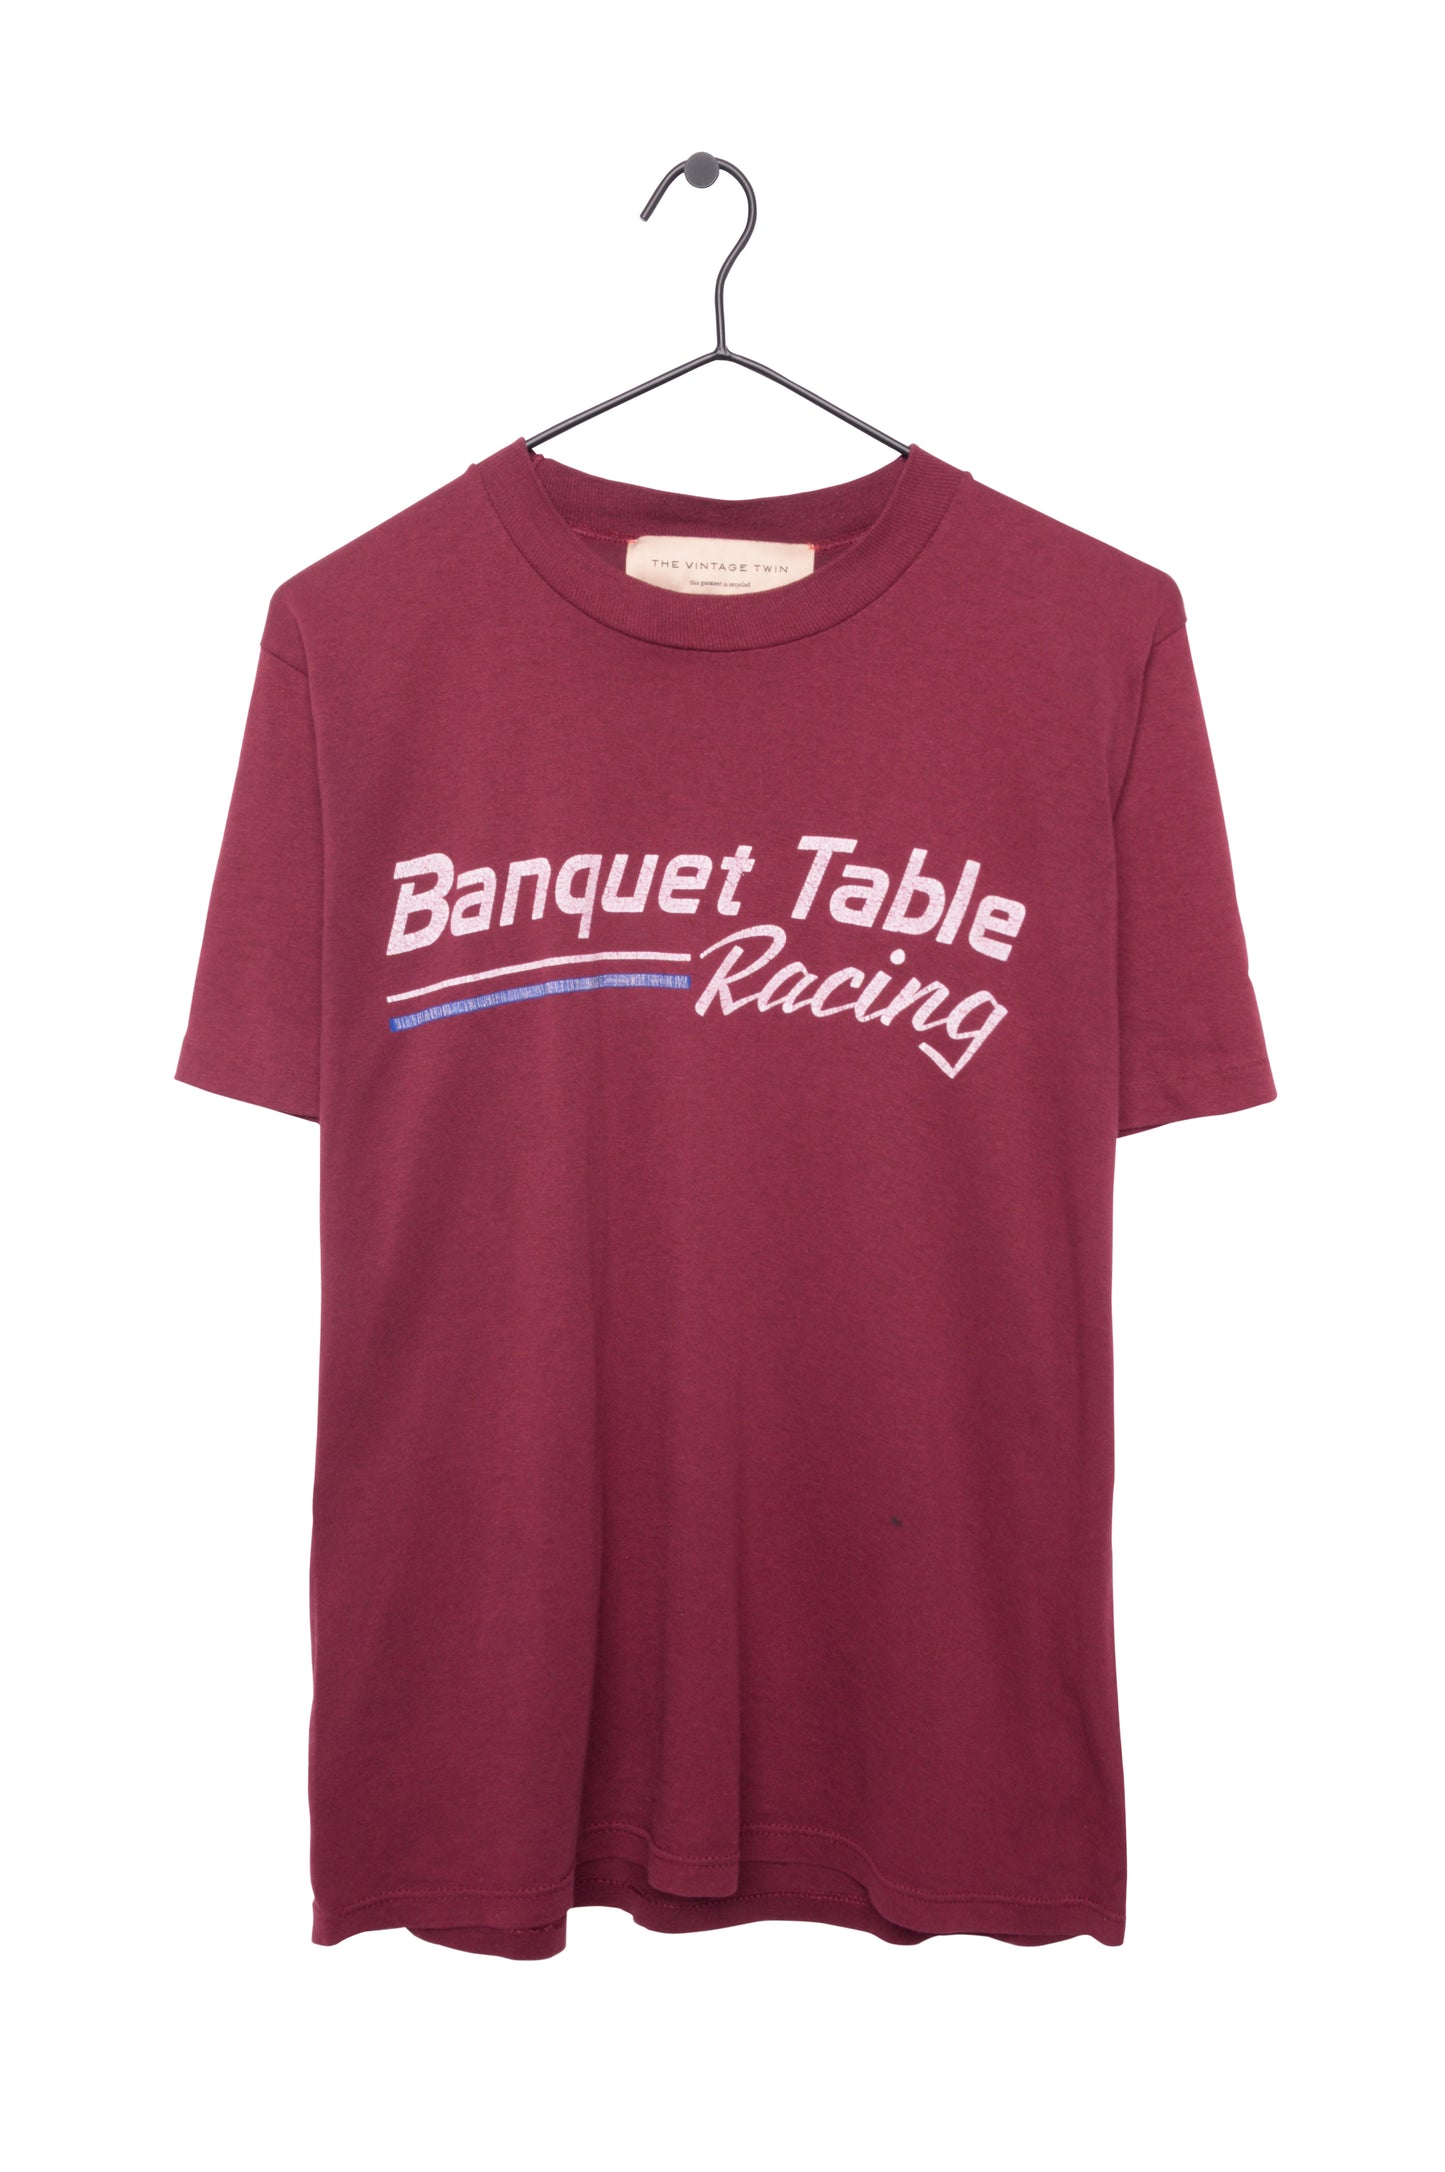 Banquet Table Racing Tee USA